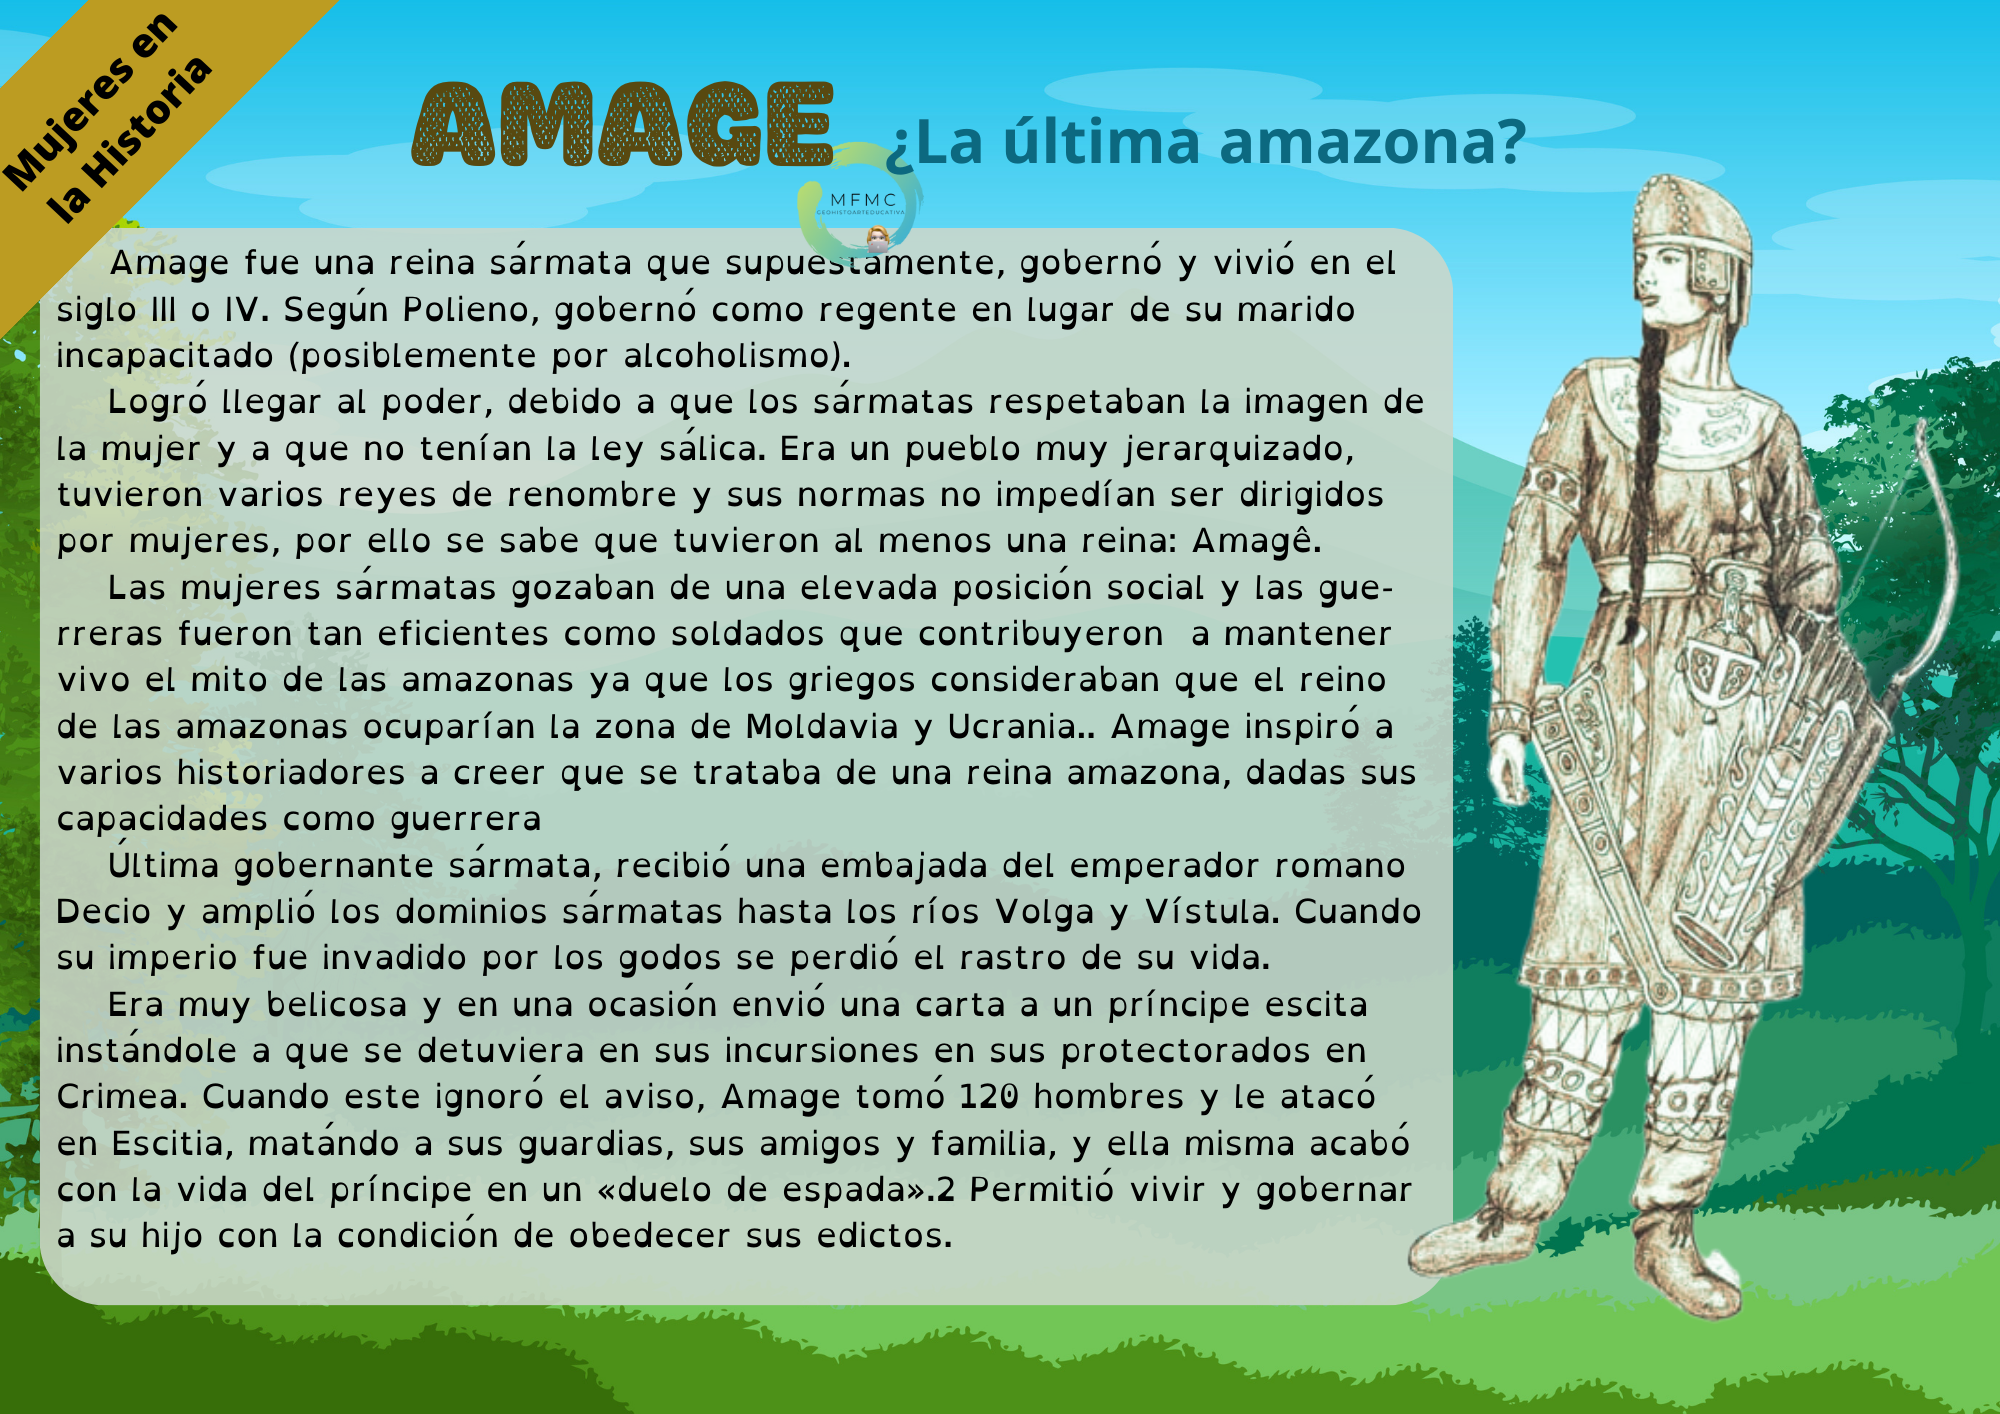 Amage